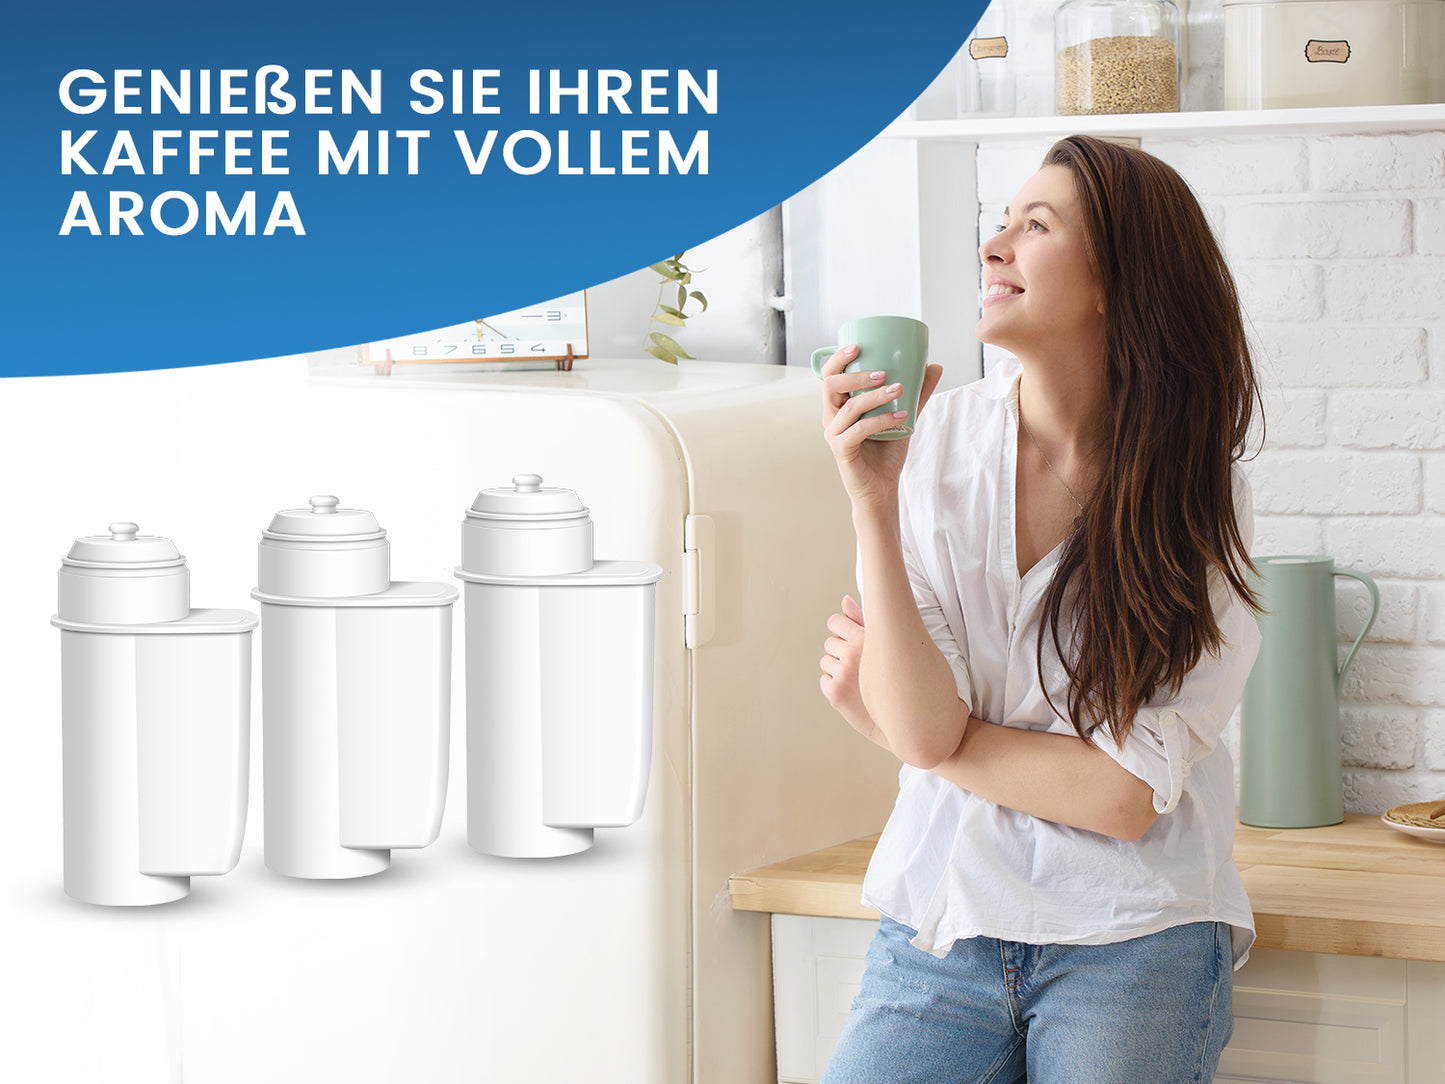 Coffee+ Wasserfilter für Kaffeemaschinen komp. mit Brita Intenza System - Pack 03